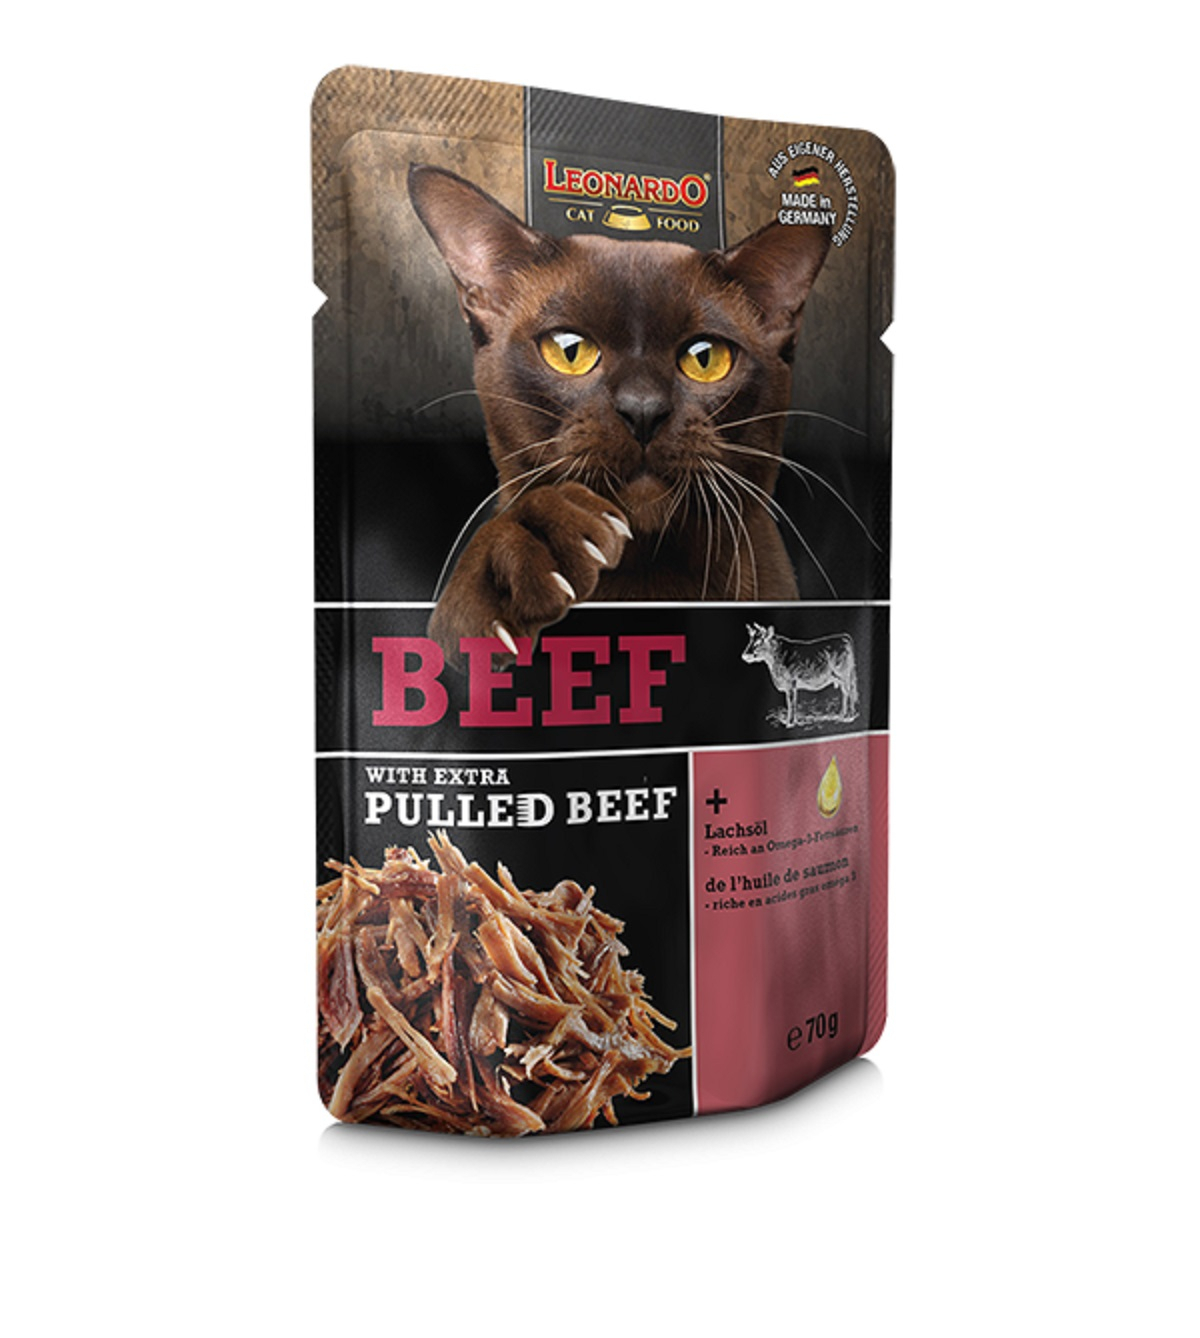 Leonardo + extra Pulled Beef Comida húmeda para gatos - varias recetas disponibles